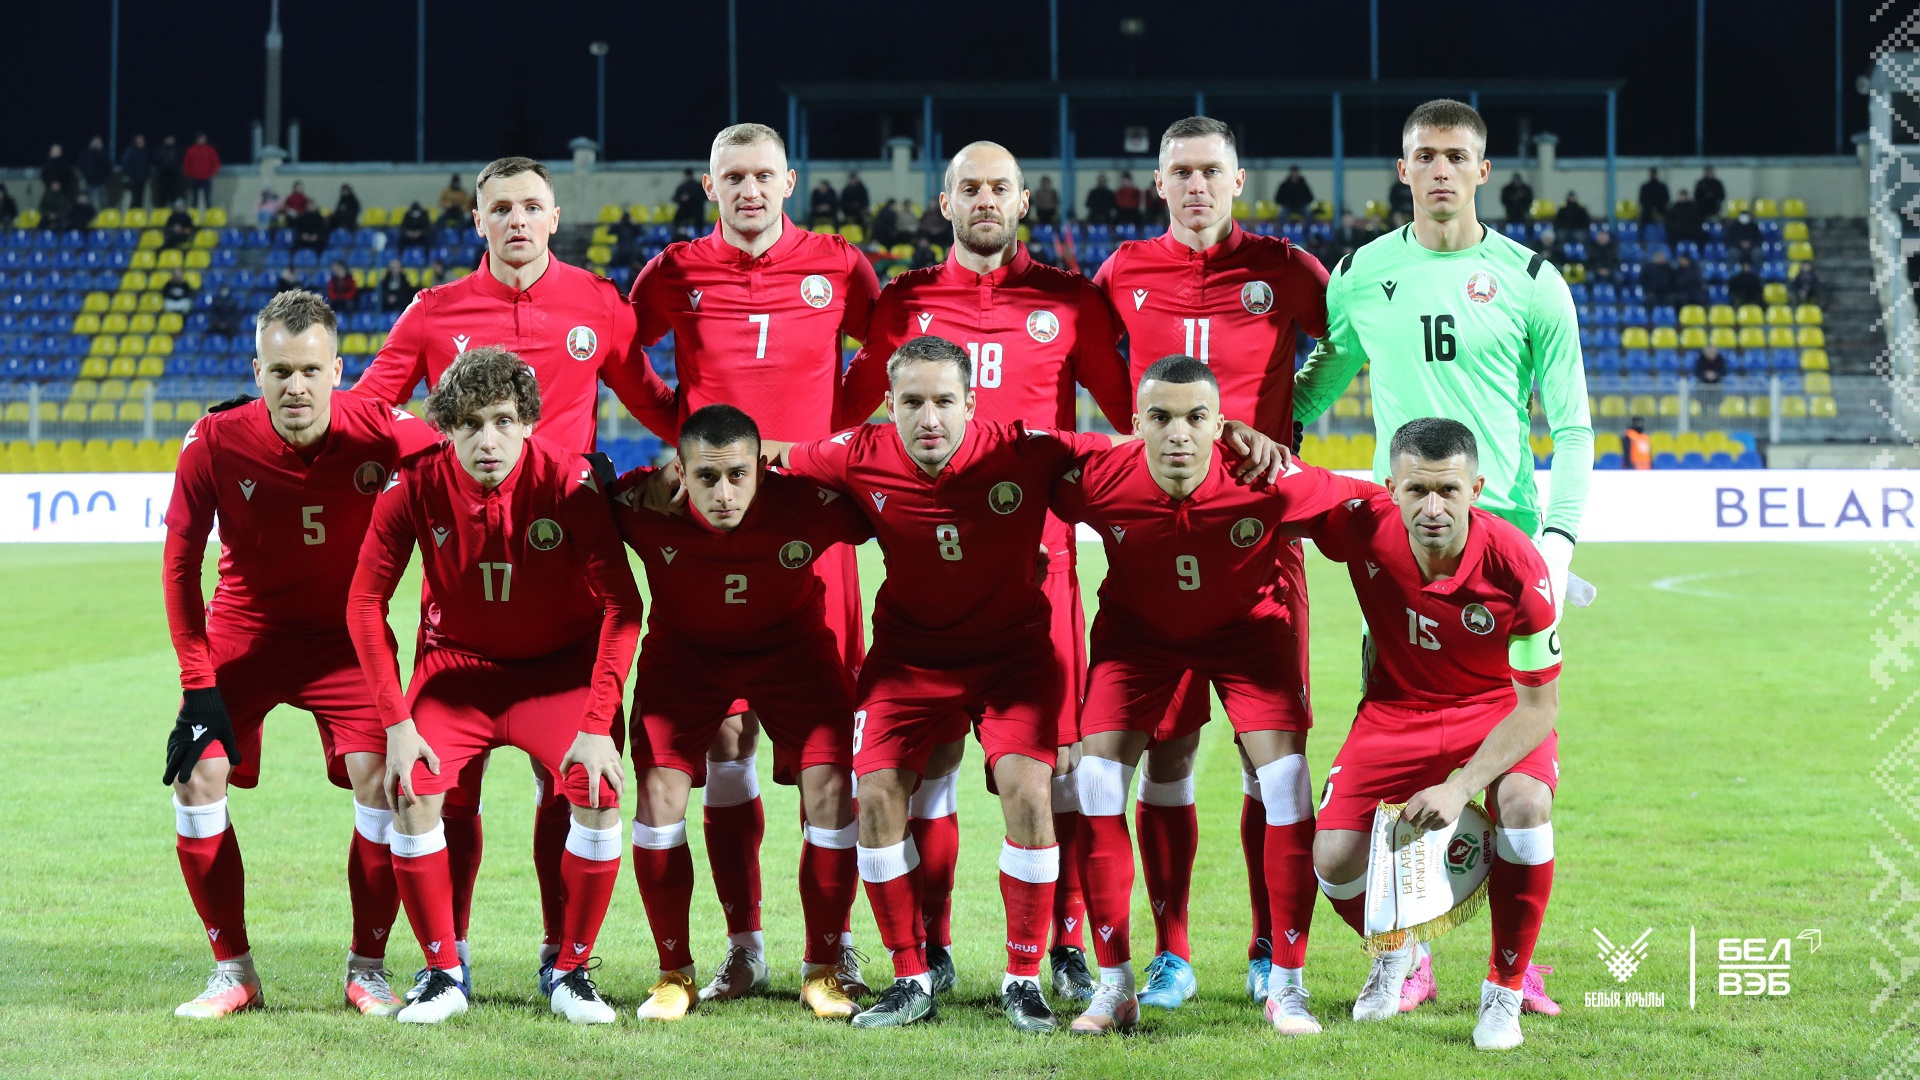 Сборная Белоруссии по футболу 2021-2022